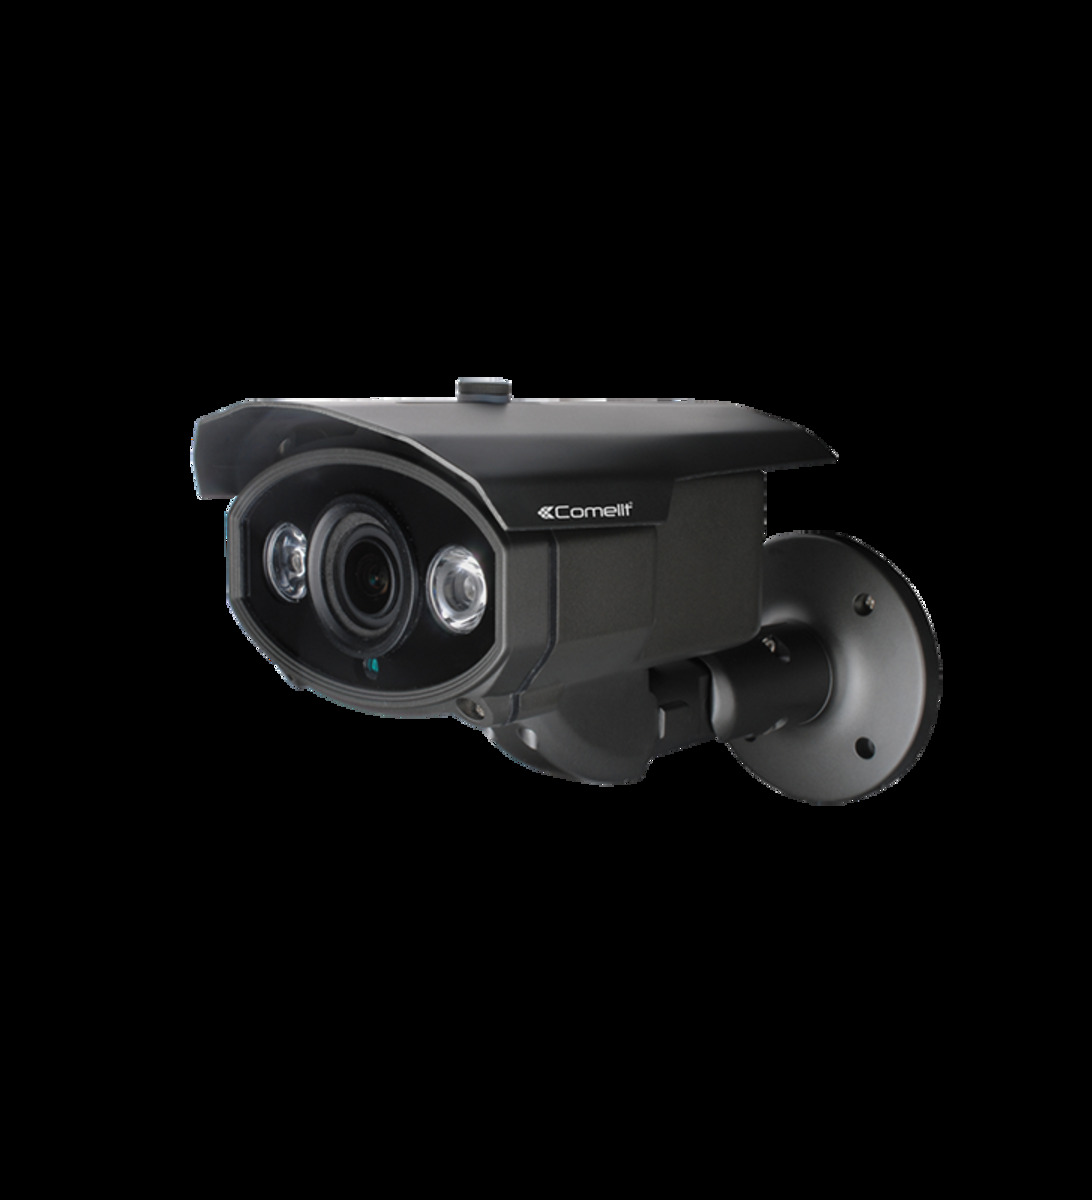 Caméra ip full-hd numérique de vidéosurveillance - optique 2.8-12 mm - ipcam162b - comelit